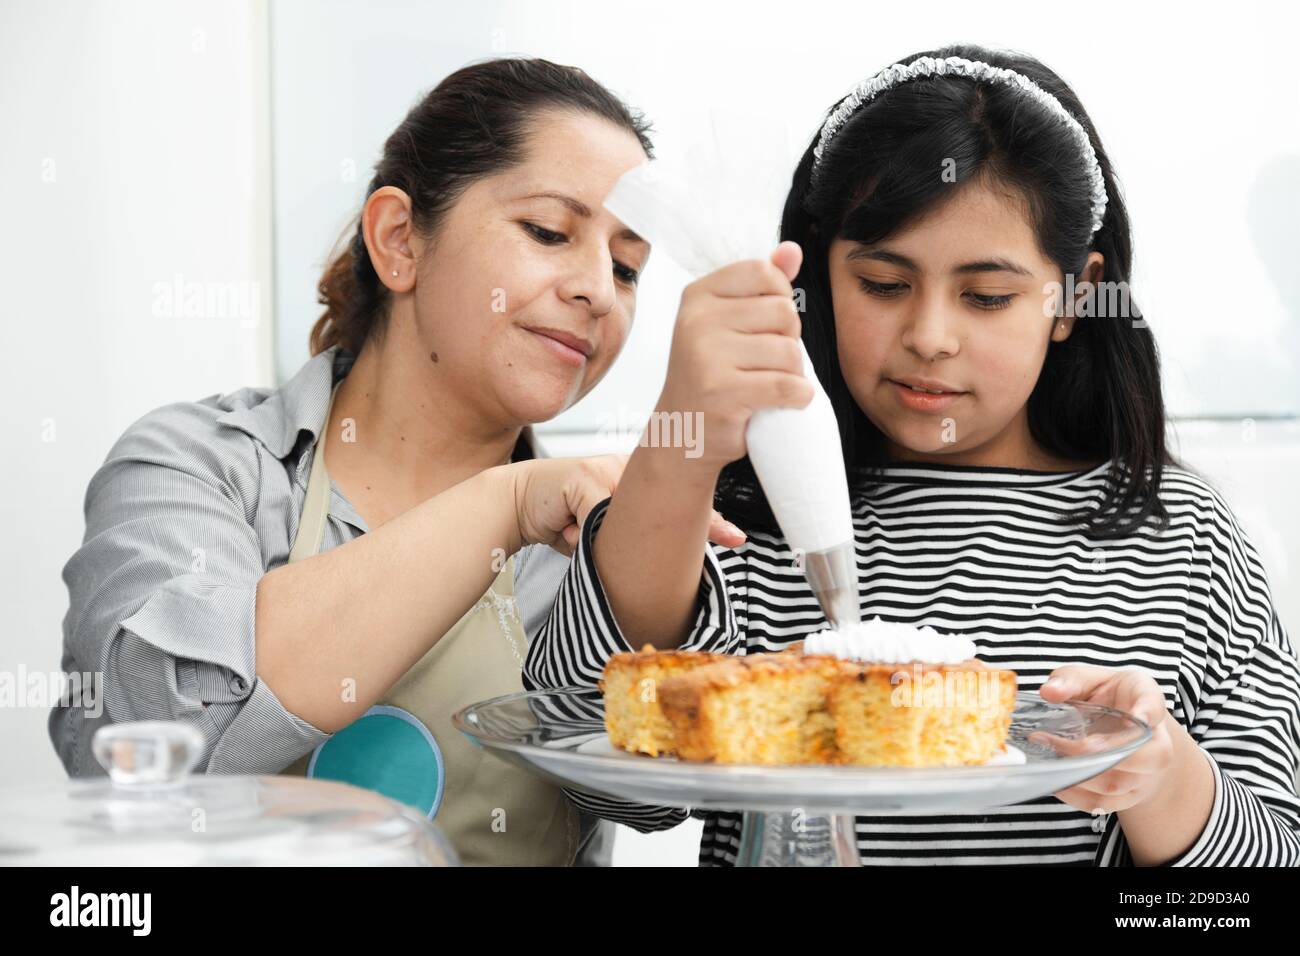 Maman et fille hispanique décorant un gâteau avec de la crème fouettée - maman latine enseignant à sa fille de décorer un gâteau Banque D'Images